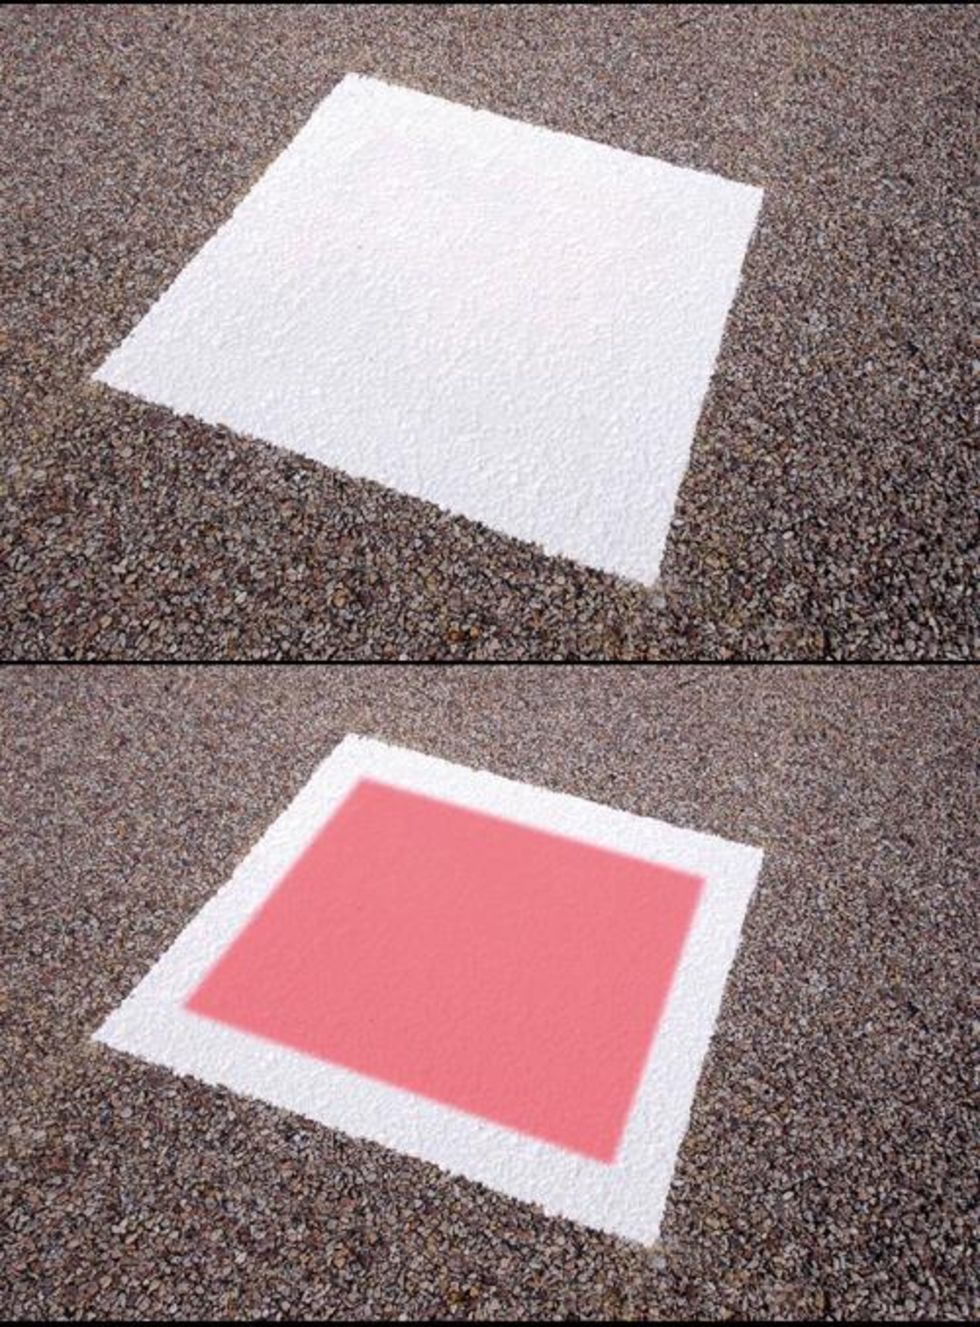 Vägen blir rosa vid halt väglag